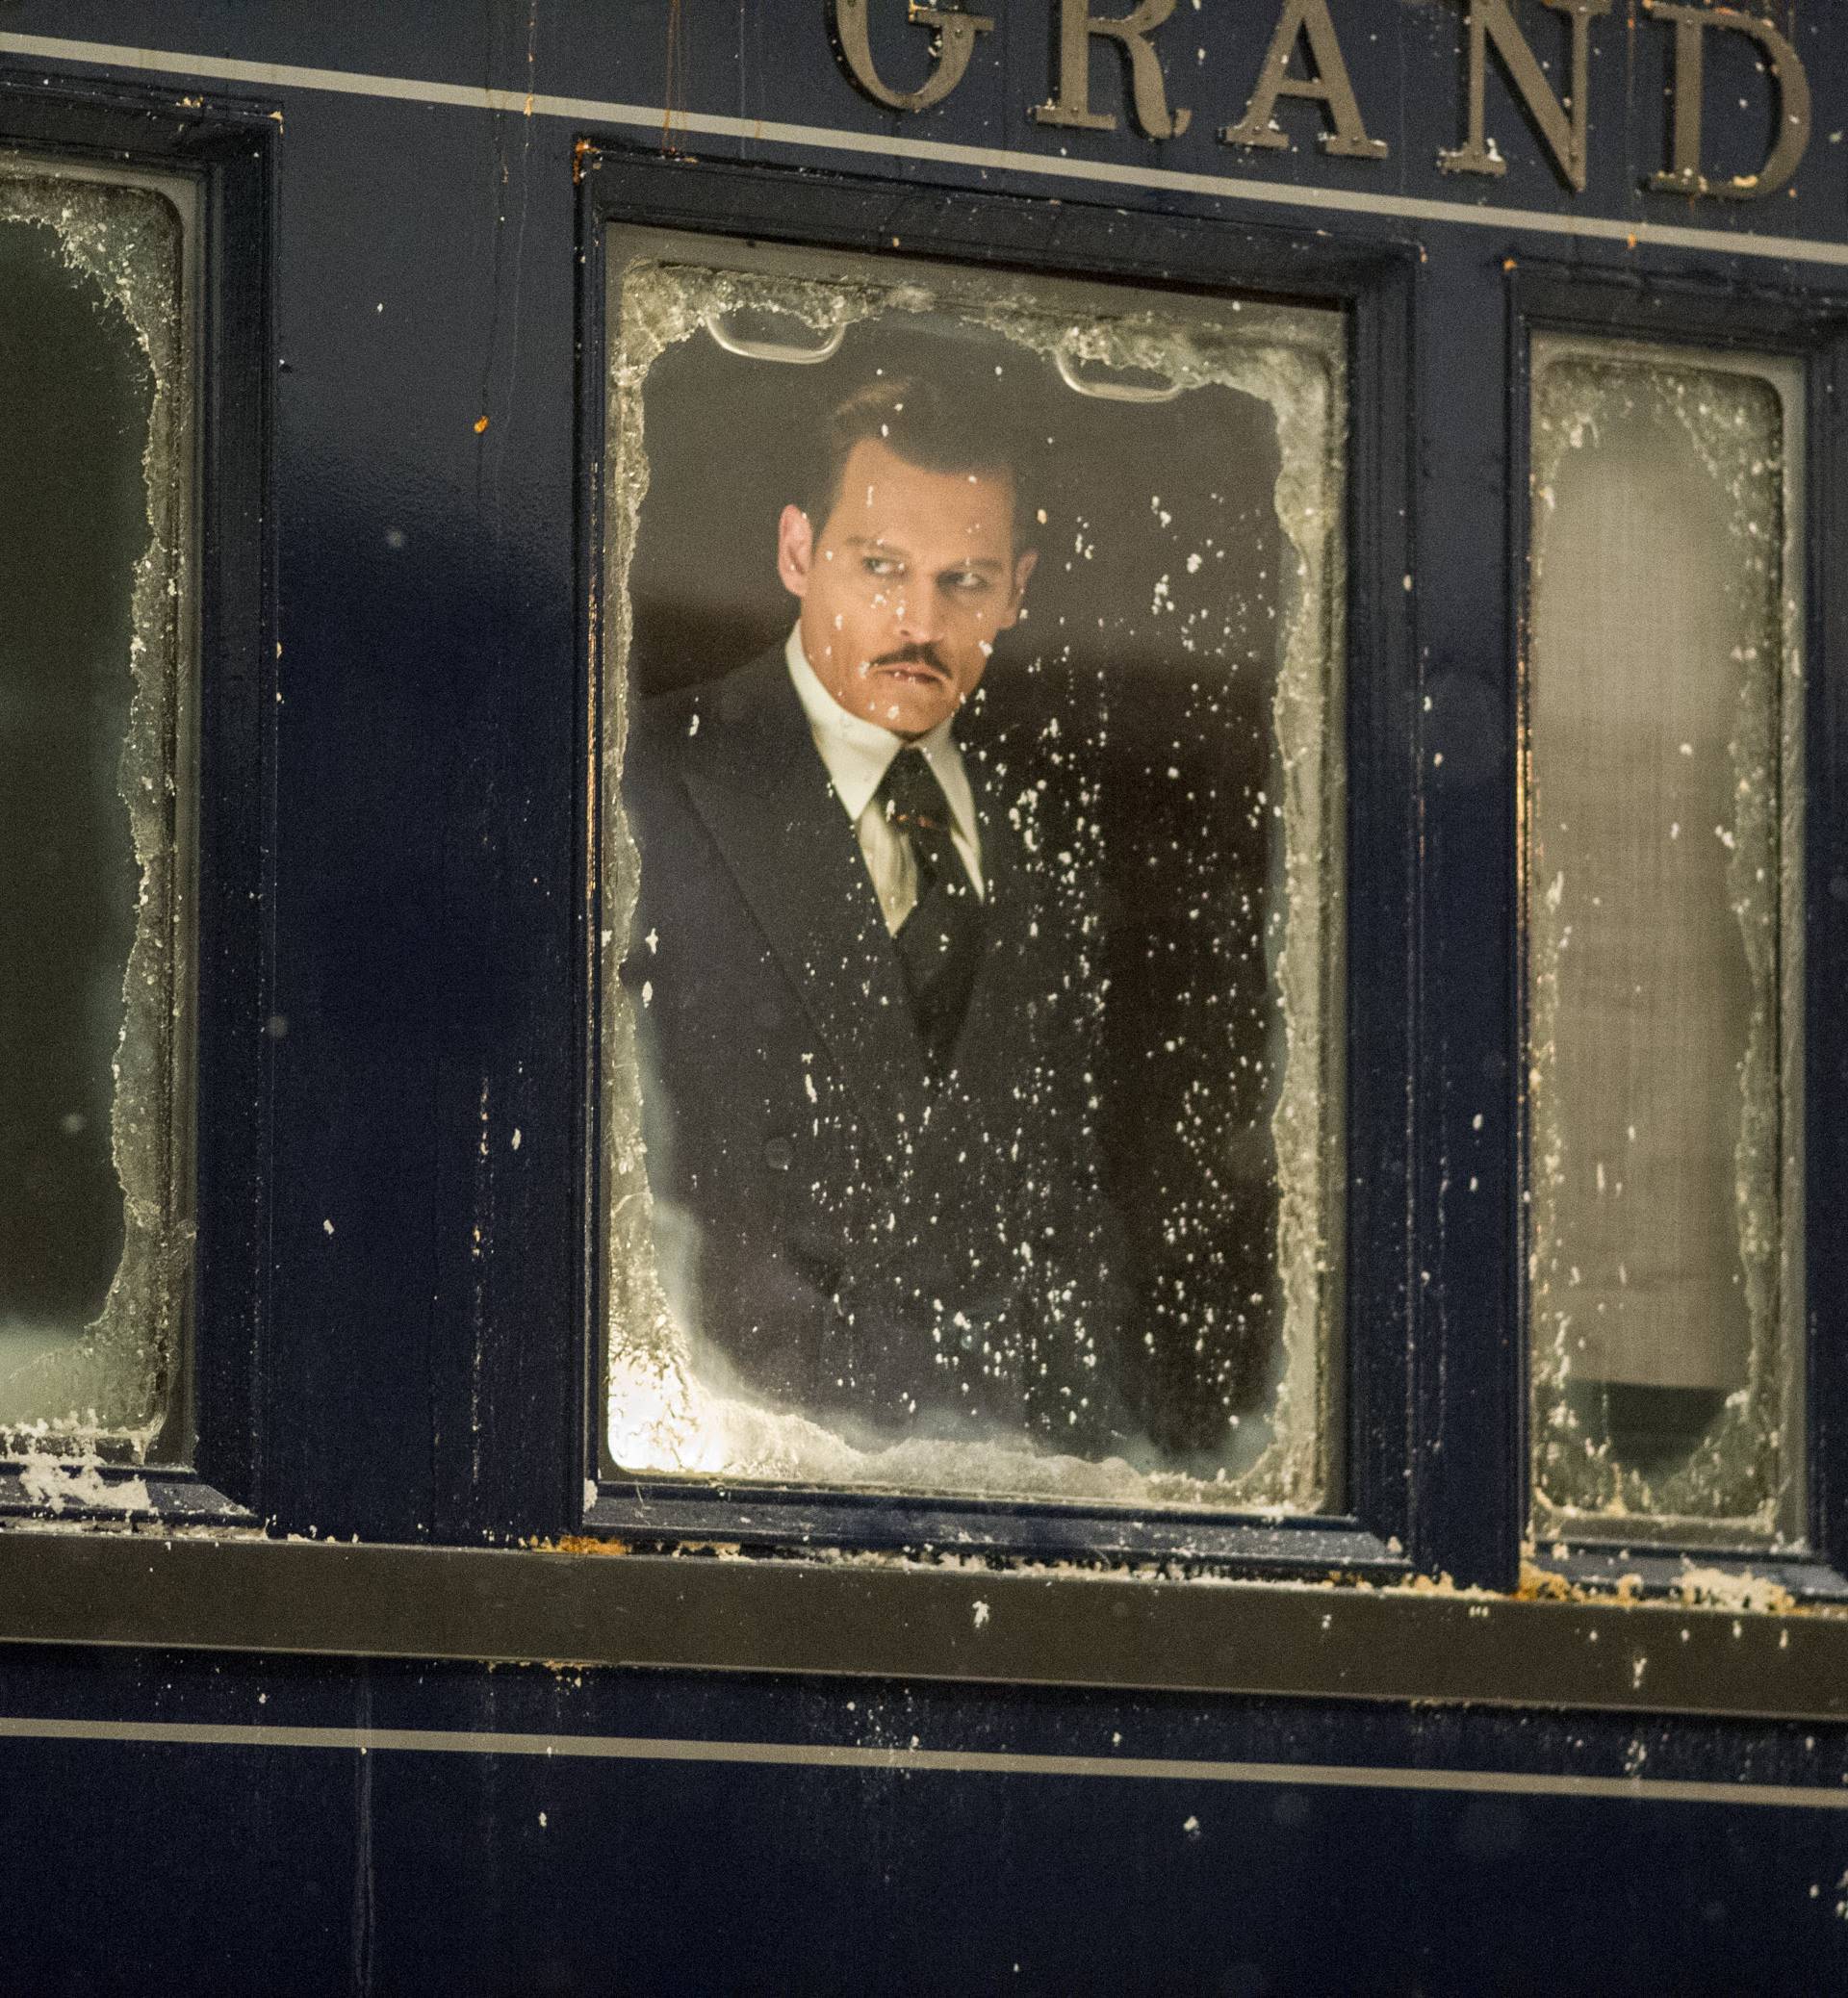 Novi Poirot izgubio je poznate brkove, ali i belgijski naglasak